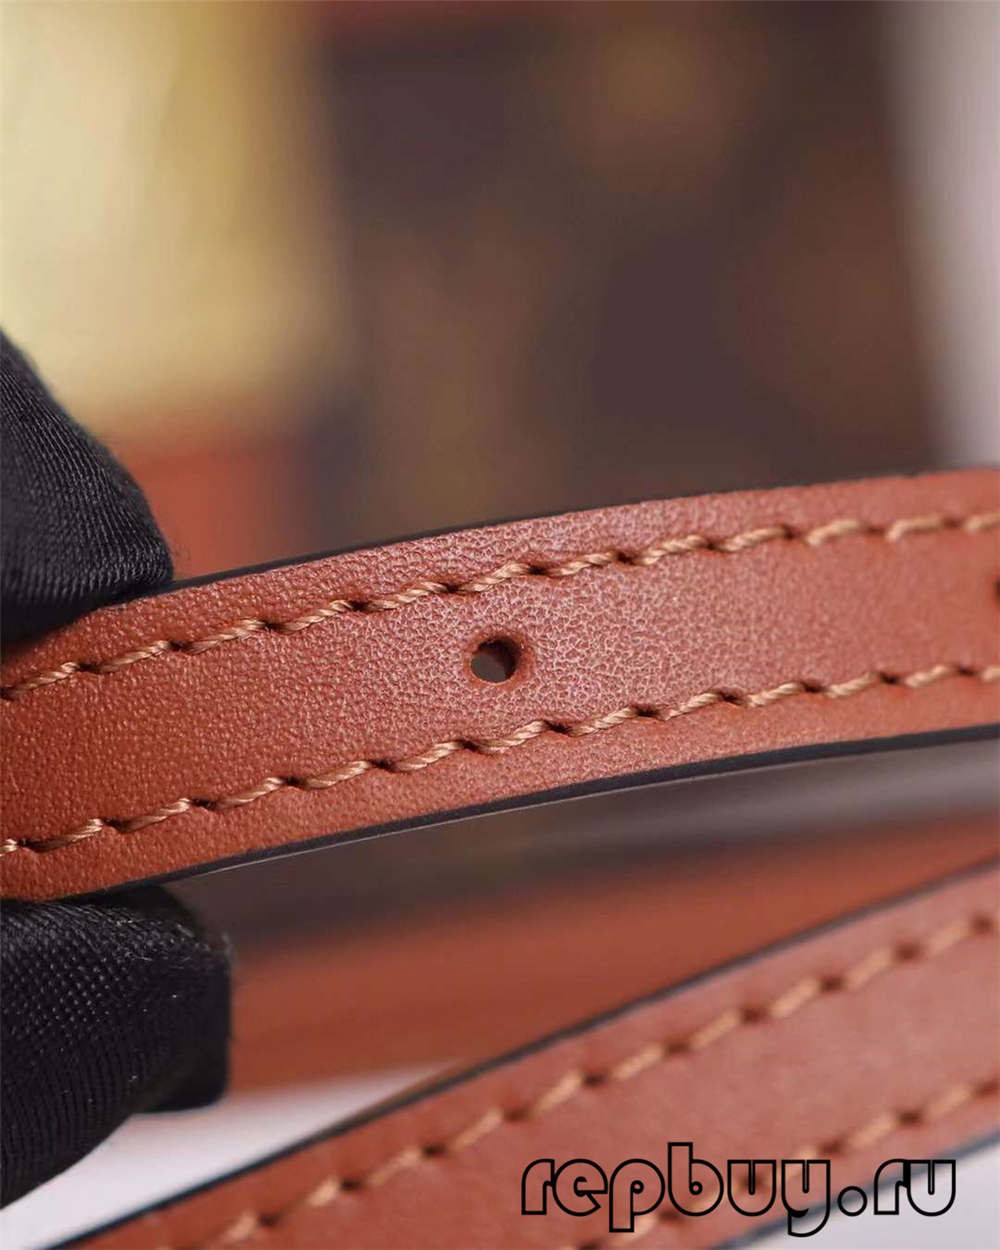 ሉዊስ Vuitton M44654 20 ሴሜ መቆለፊያ BB ብራውን ከፍተኛ ቅጂ ቦርሳዎች (2022 ልዩ)-Best Quality Fake Louis Vuitton Bag Online Store, Replica designer bag ru